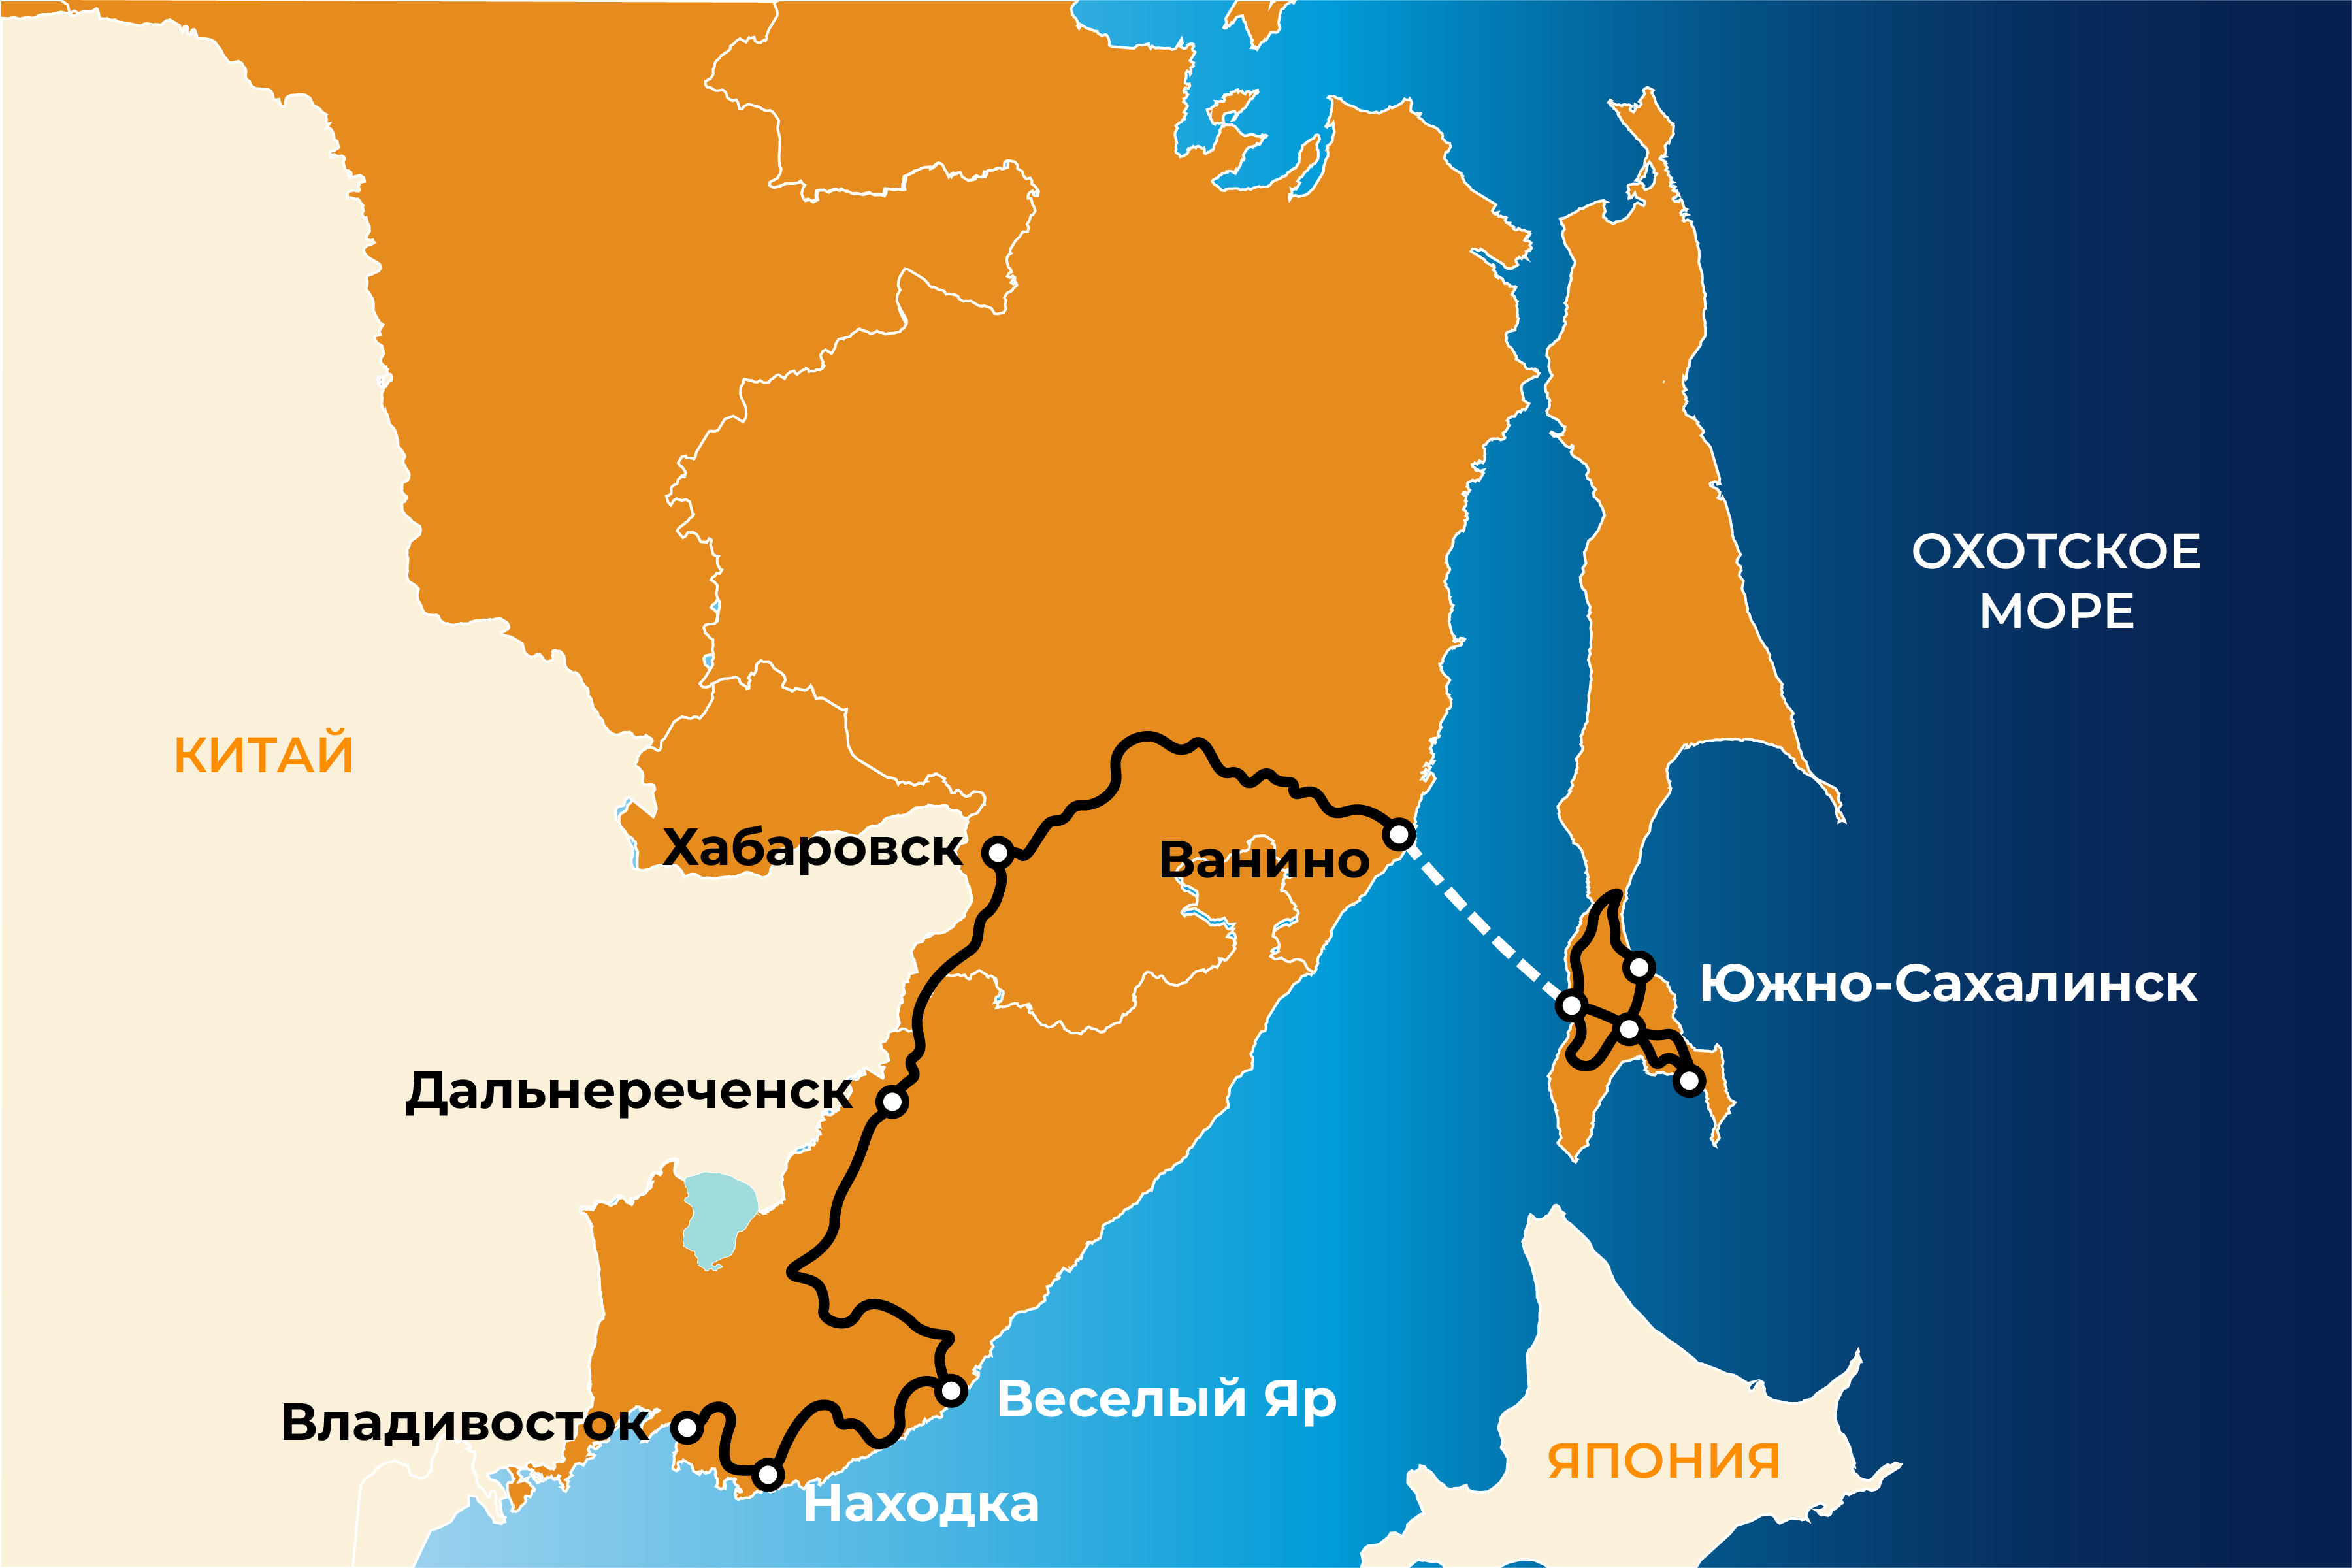 Билеты находка хабаровск. Сахалин и Владивосток на карте. Сахалин - Хабаровск - Владивосток. Газопровод Сахалин Хабаровск Владивосток на карте. Владивосток остров Сахалин.